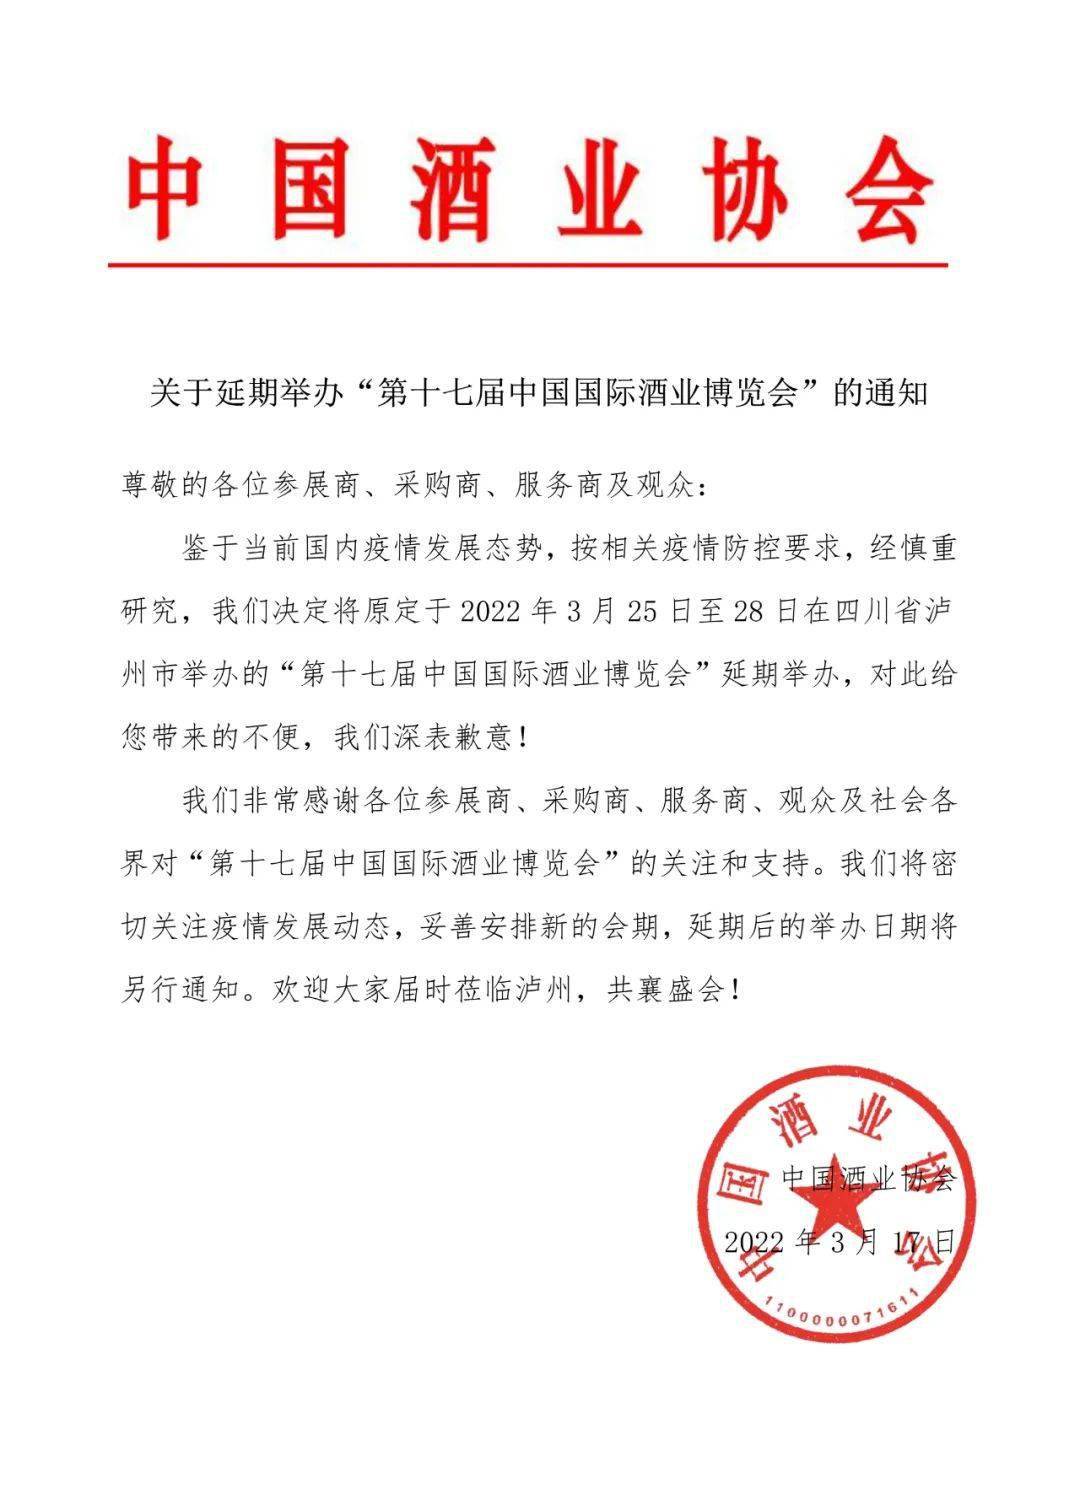 关于延期举办“第十七届中国国际酒业博览会”的通知 